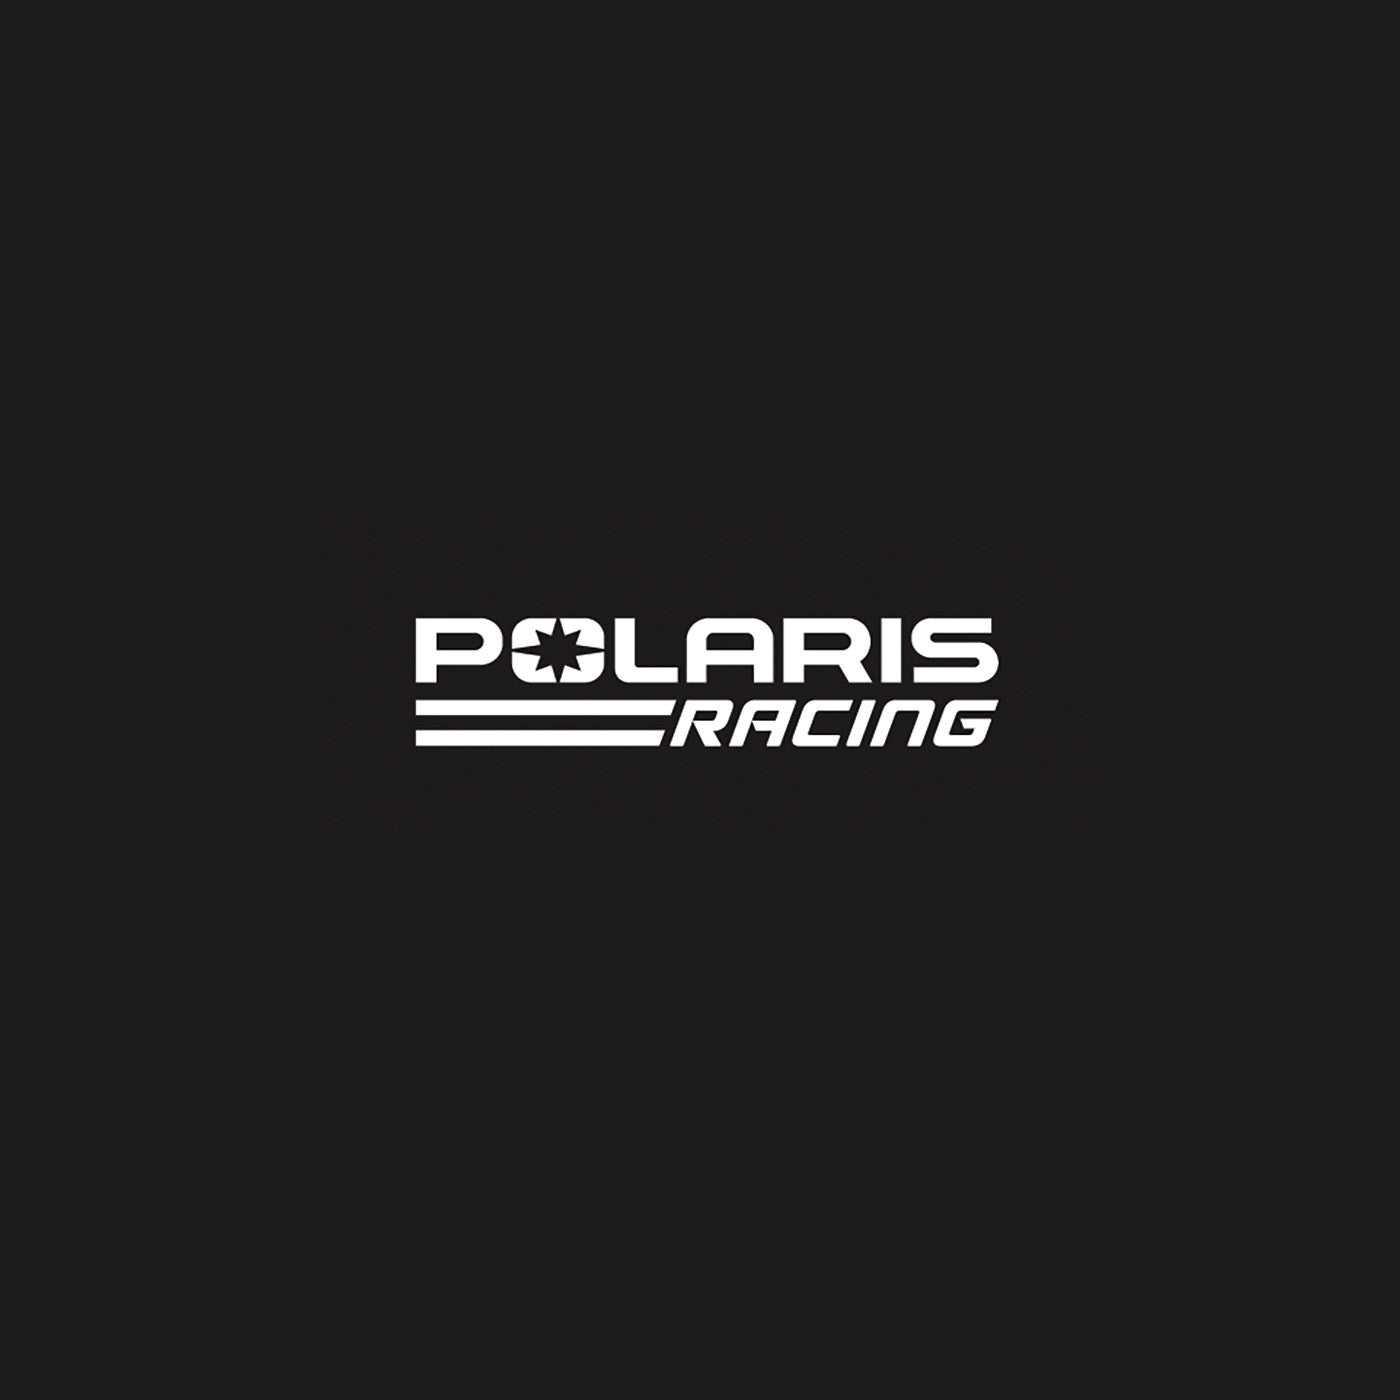 Polaris Racing Logo